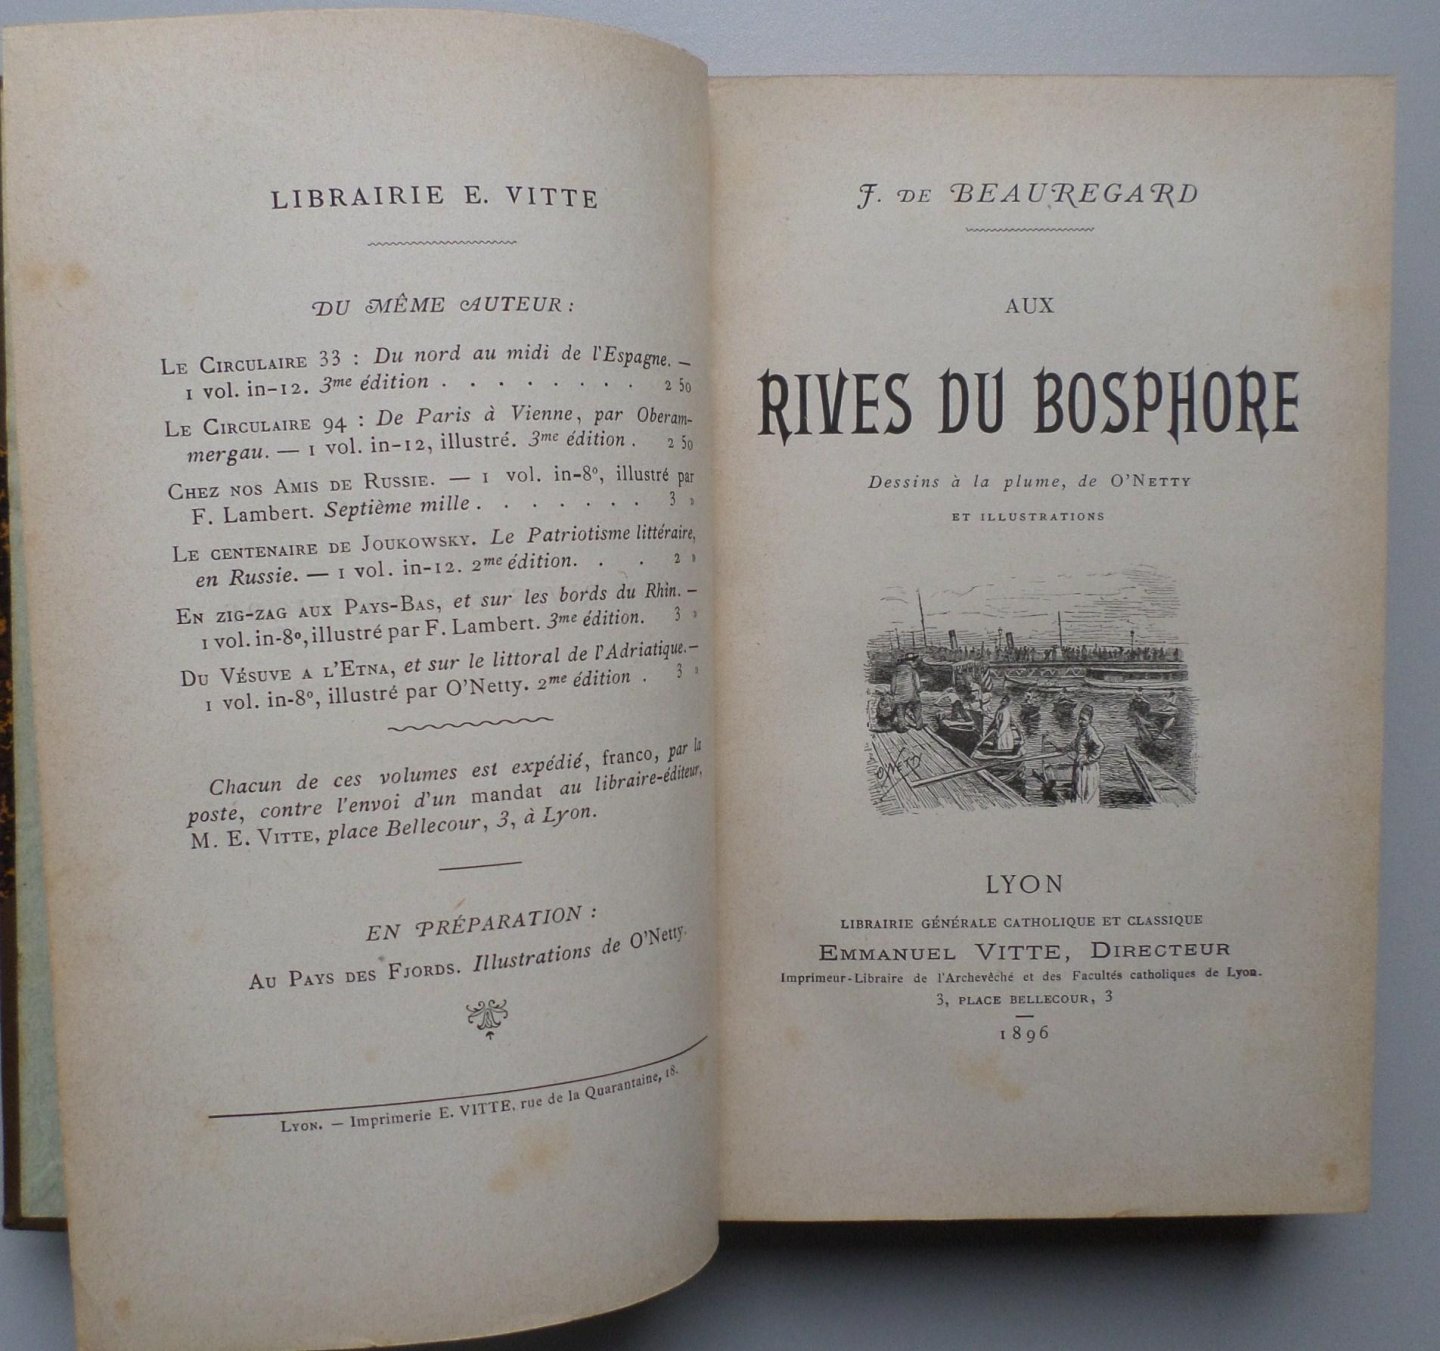 J. de Beauregard  - Aux rives du Bosphore, dessins a la plume, de O'Netty et Illustrations